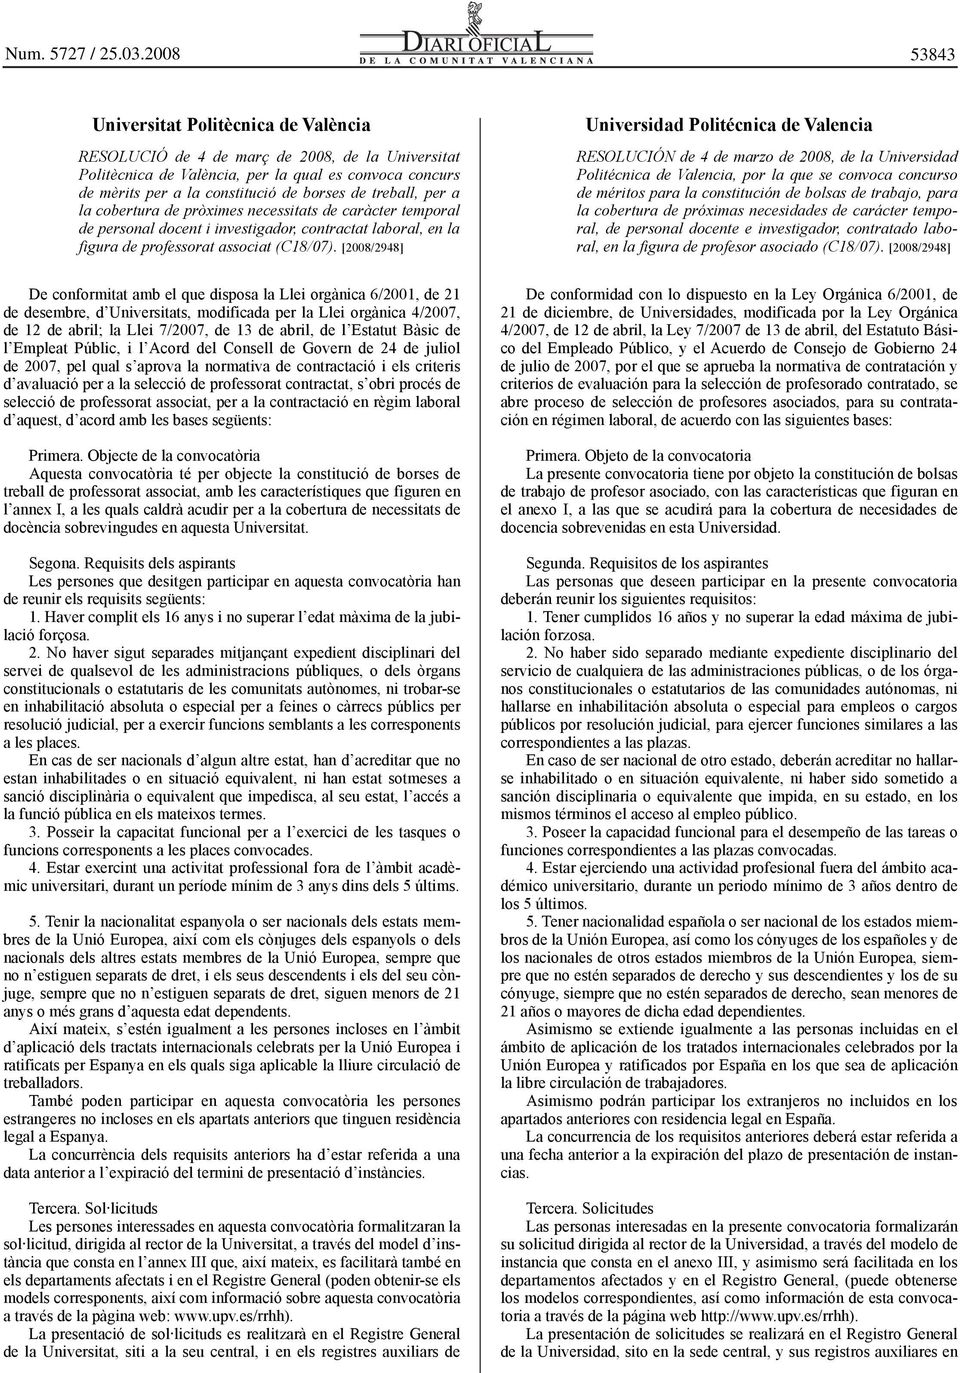 [2008/2948] Universidad Politécnica de Valencia RESOLUCIÓN de 4 de marzo de 2008, de la Universidad Politécnica de Valencia, por la que se convoca concurso de méritos para la constitución de bolsas